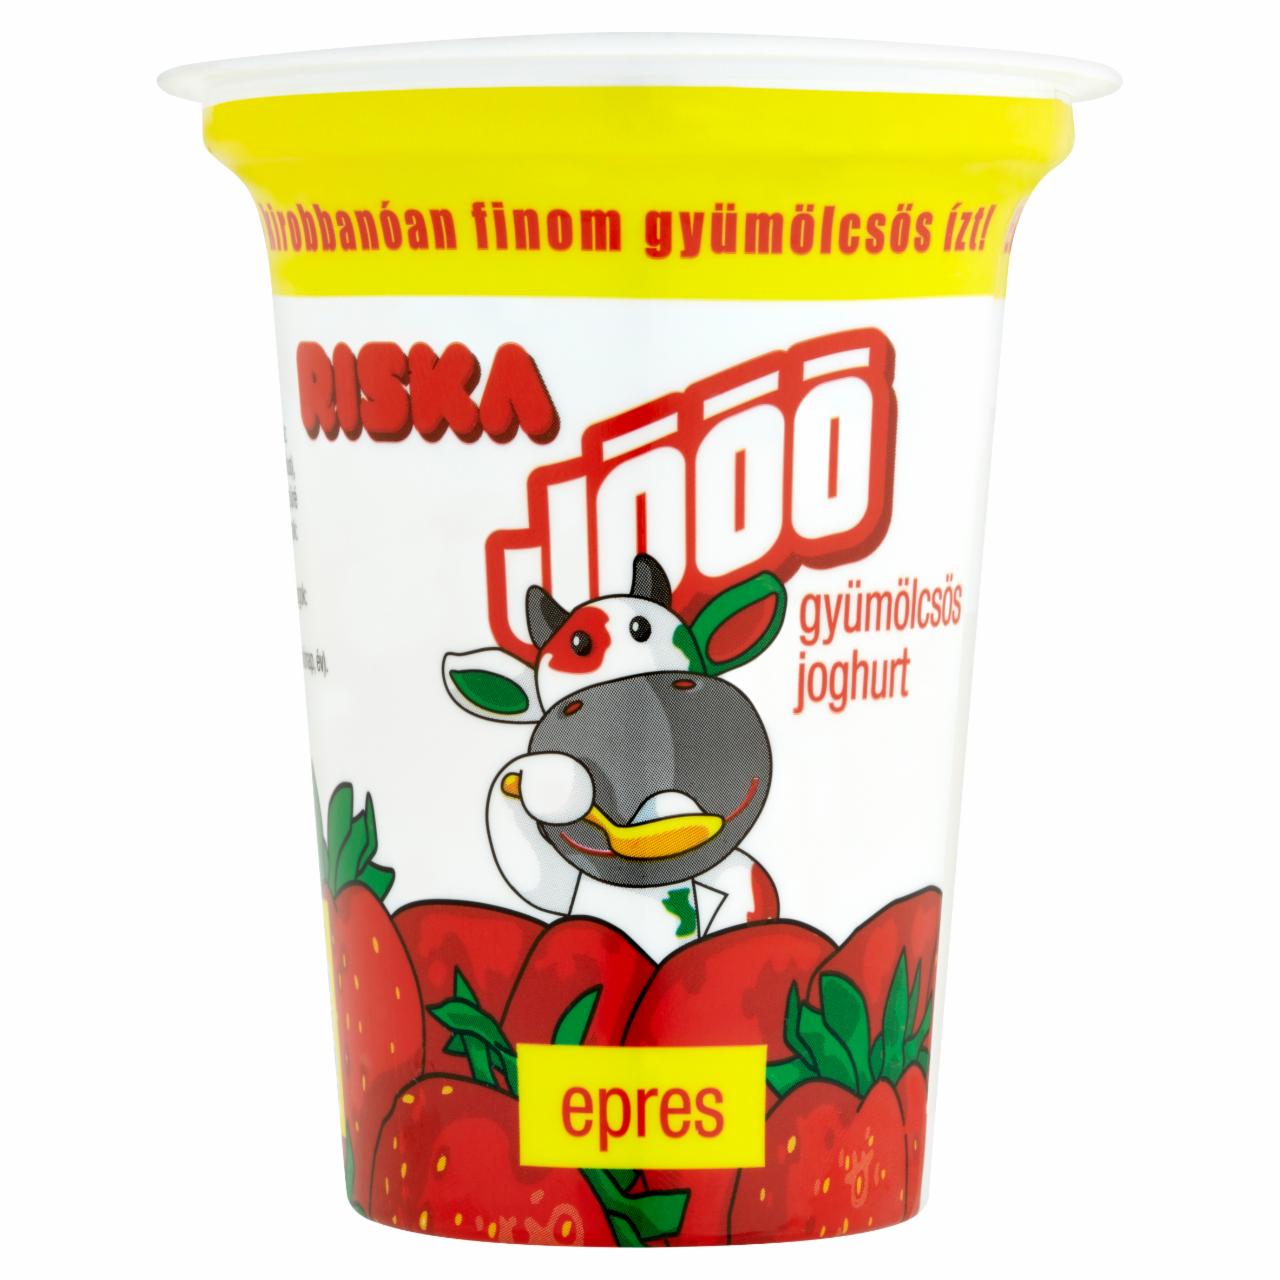 Képek - Riska Jóóó epres joghurt 140 g